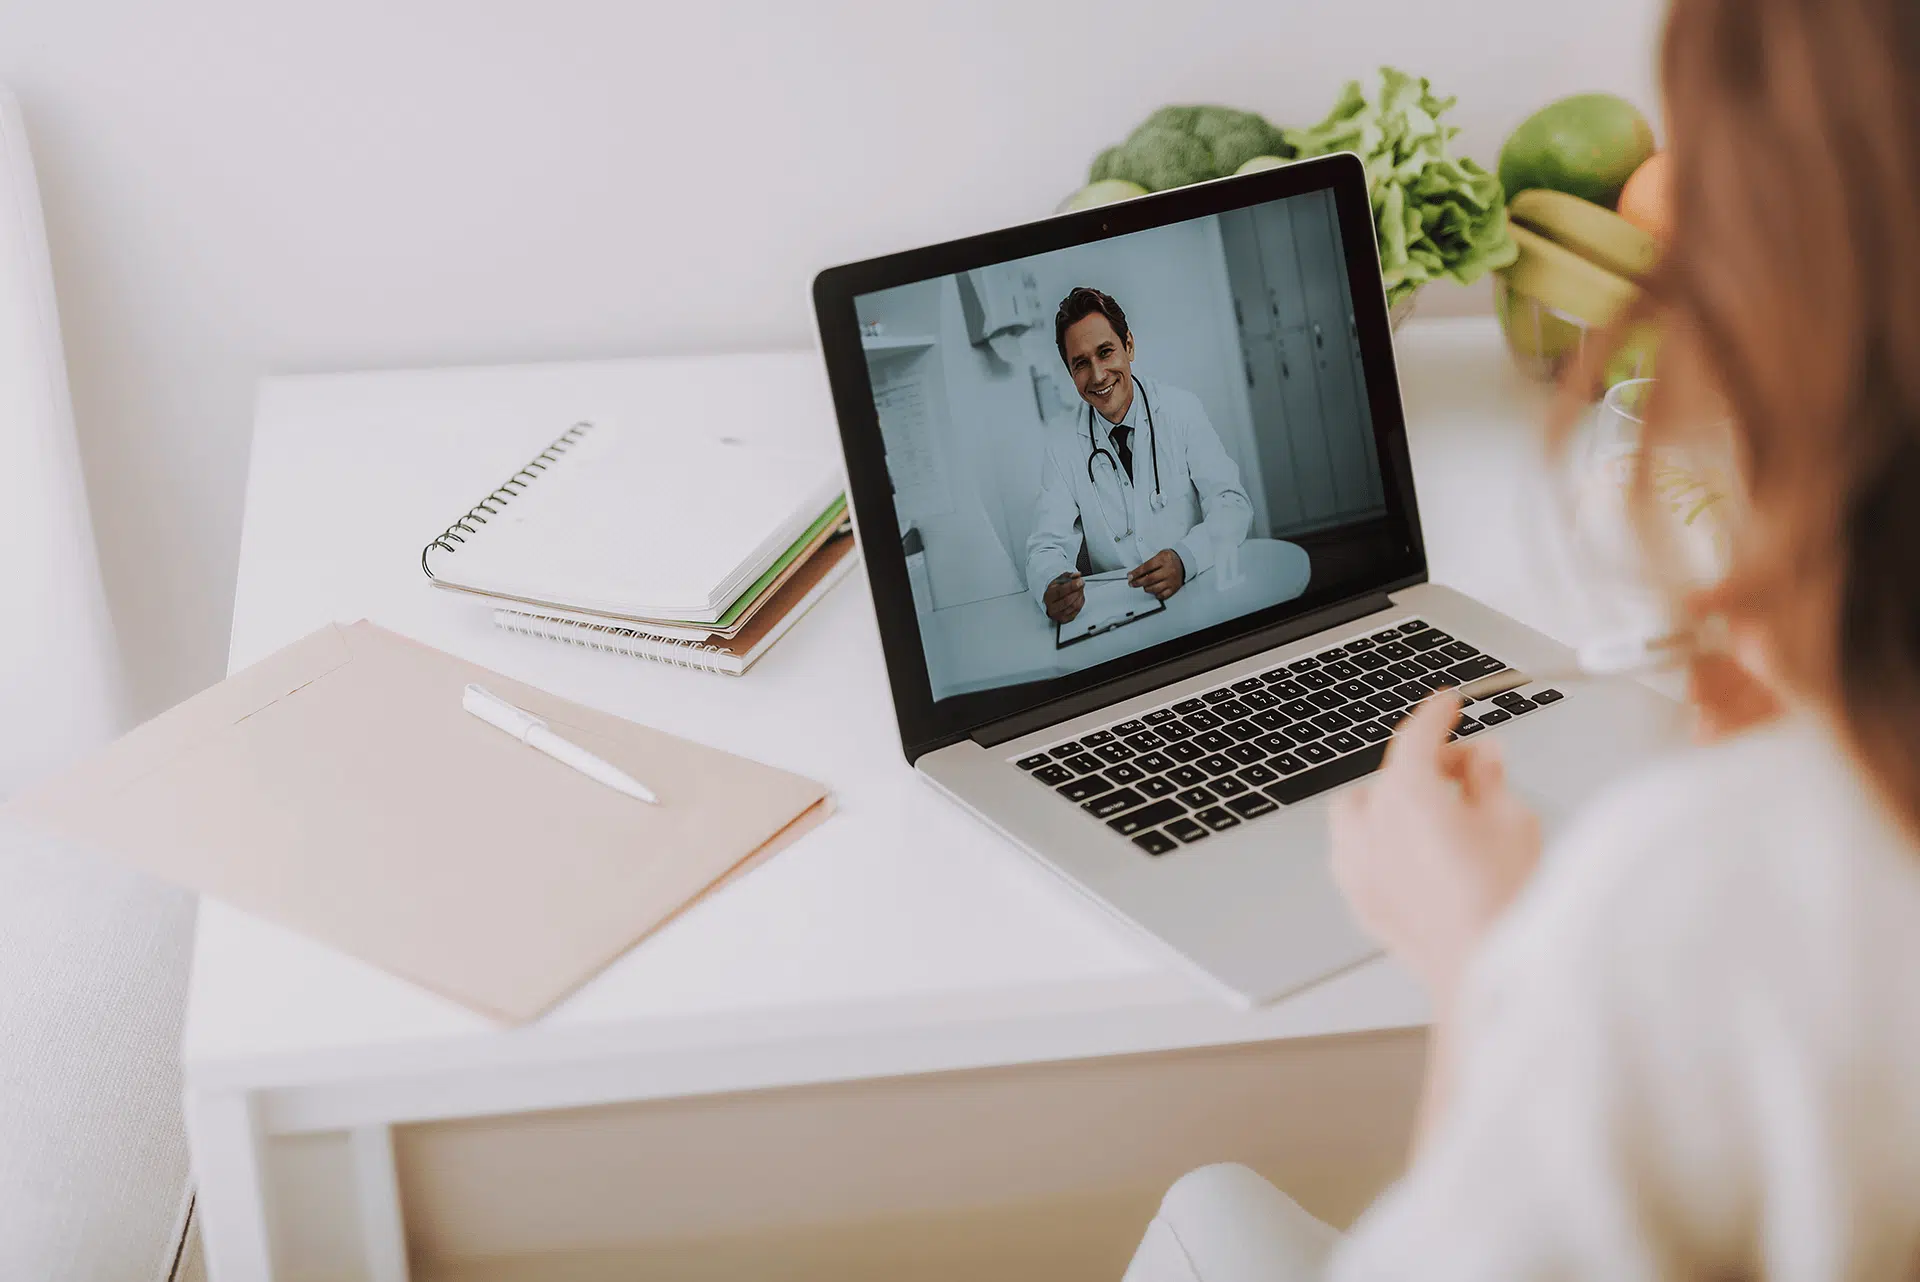 تصویری از ارتباط بین پزشک و بیمار از طریق لپ تاپ در مراکز درمانی هوشمند را نشان می دهد.